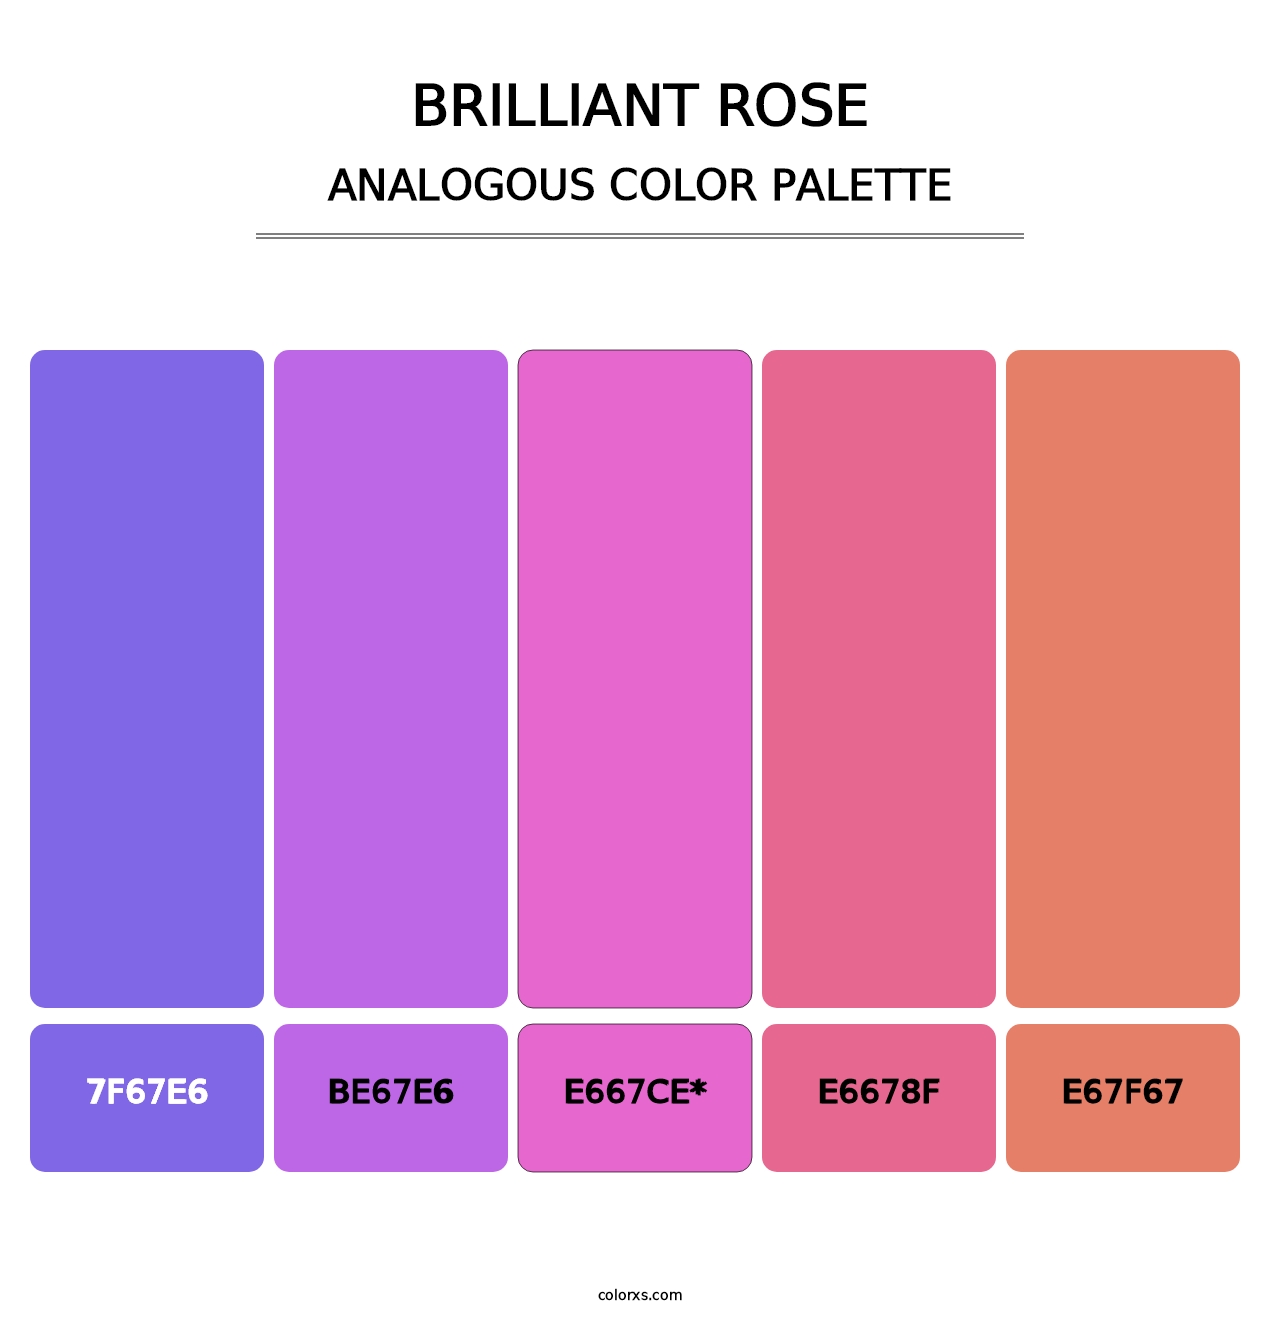 Brilliant Rose - Analogous Color Palette